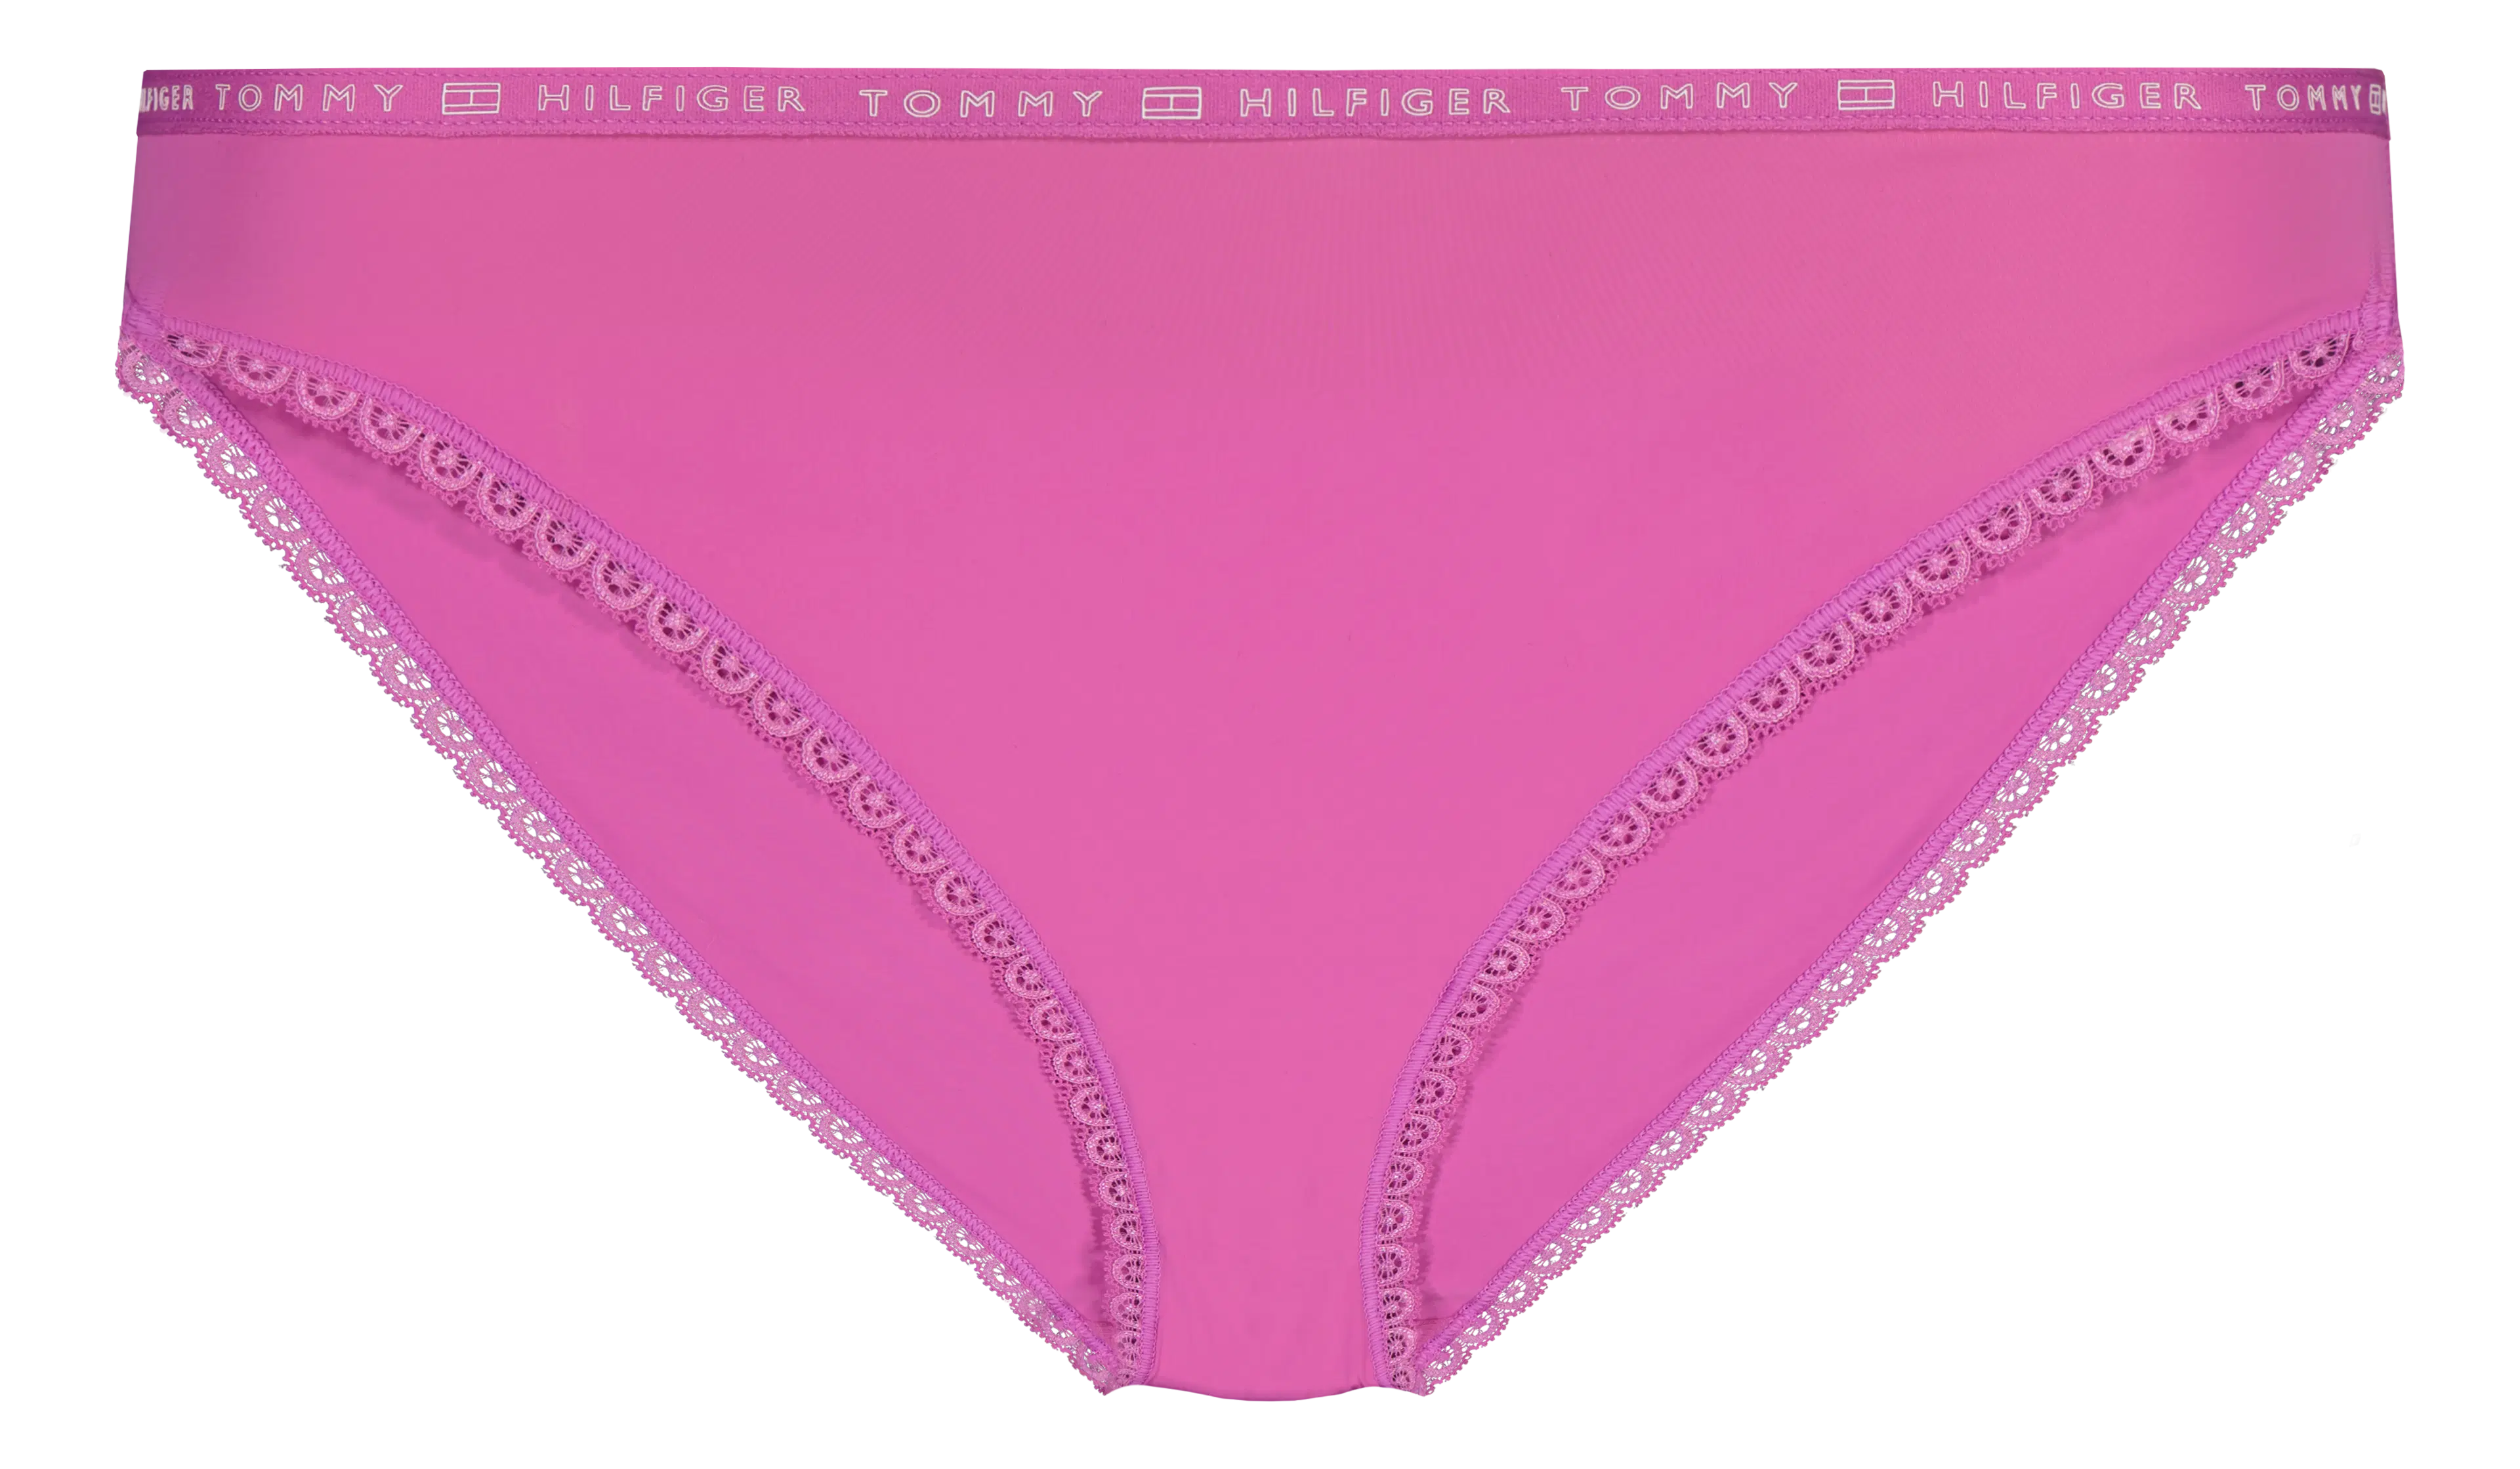 Tommy Hilfiger Micro Lace Bikini- alushousut 3pkt